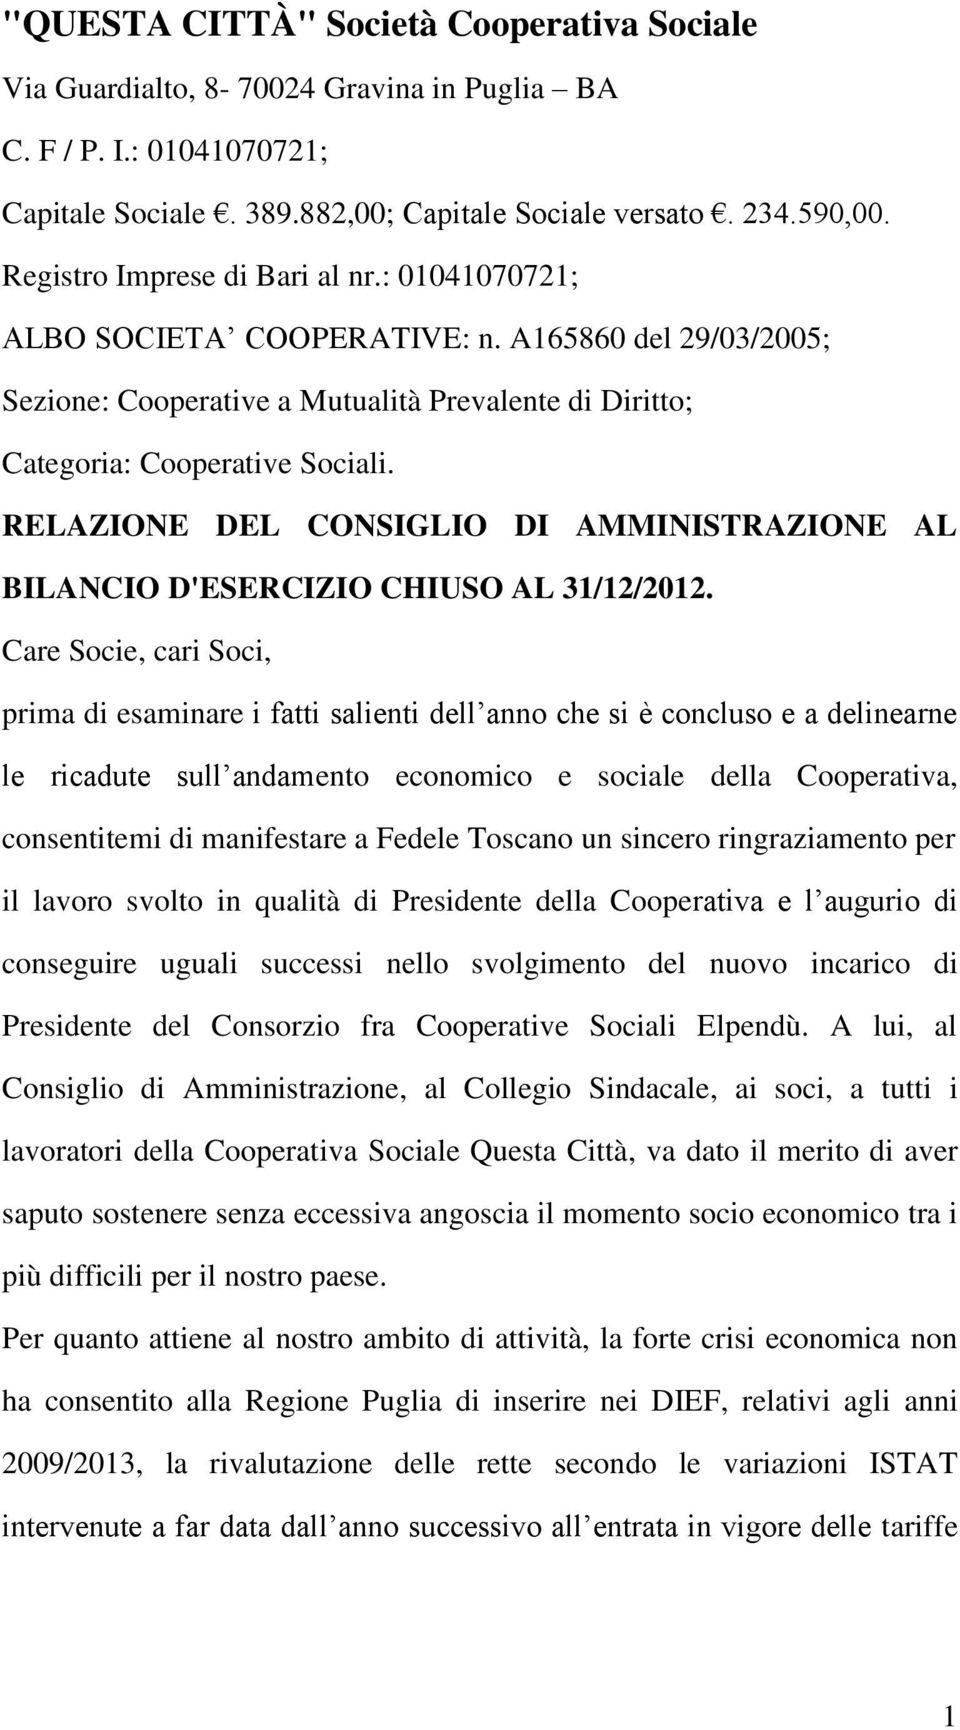 RELAZIONE DEL CONSIGLIO DI AMMINISTRAZIONE AL BILANCIO D'ESERCIZIO CHIUSO AL 31/12/2012.